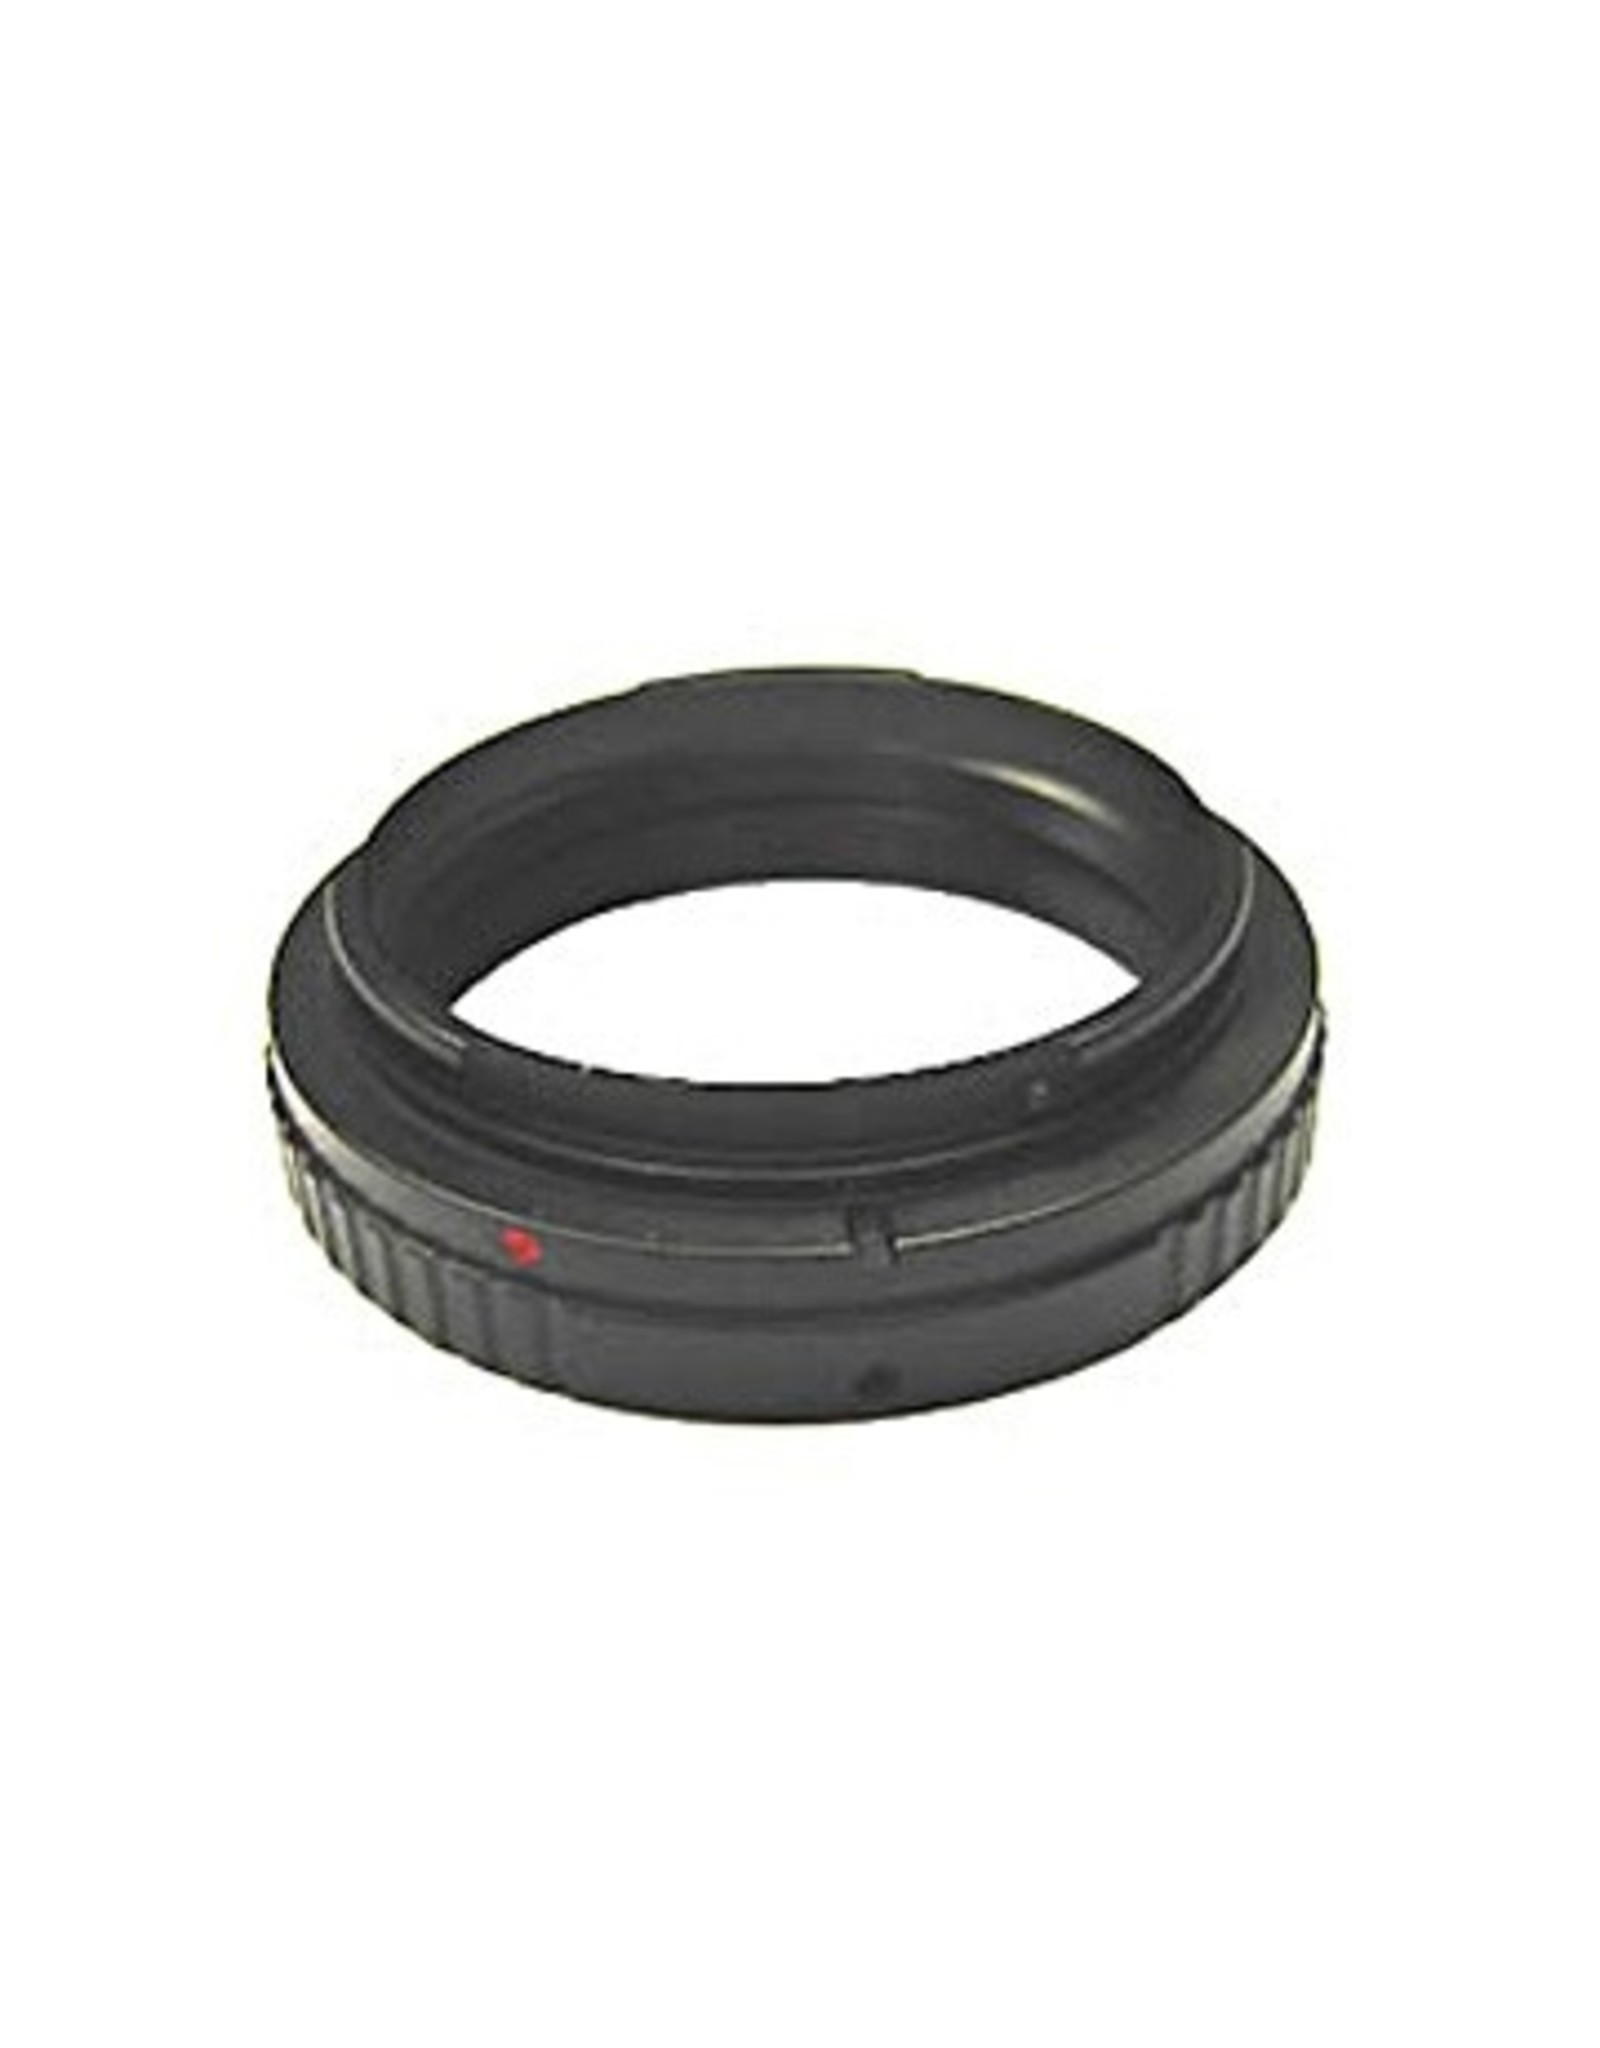 TS-Optics TS-Optics Optics T Ring from M48 Filterthread to Canon EOS Bayonet